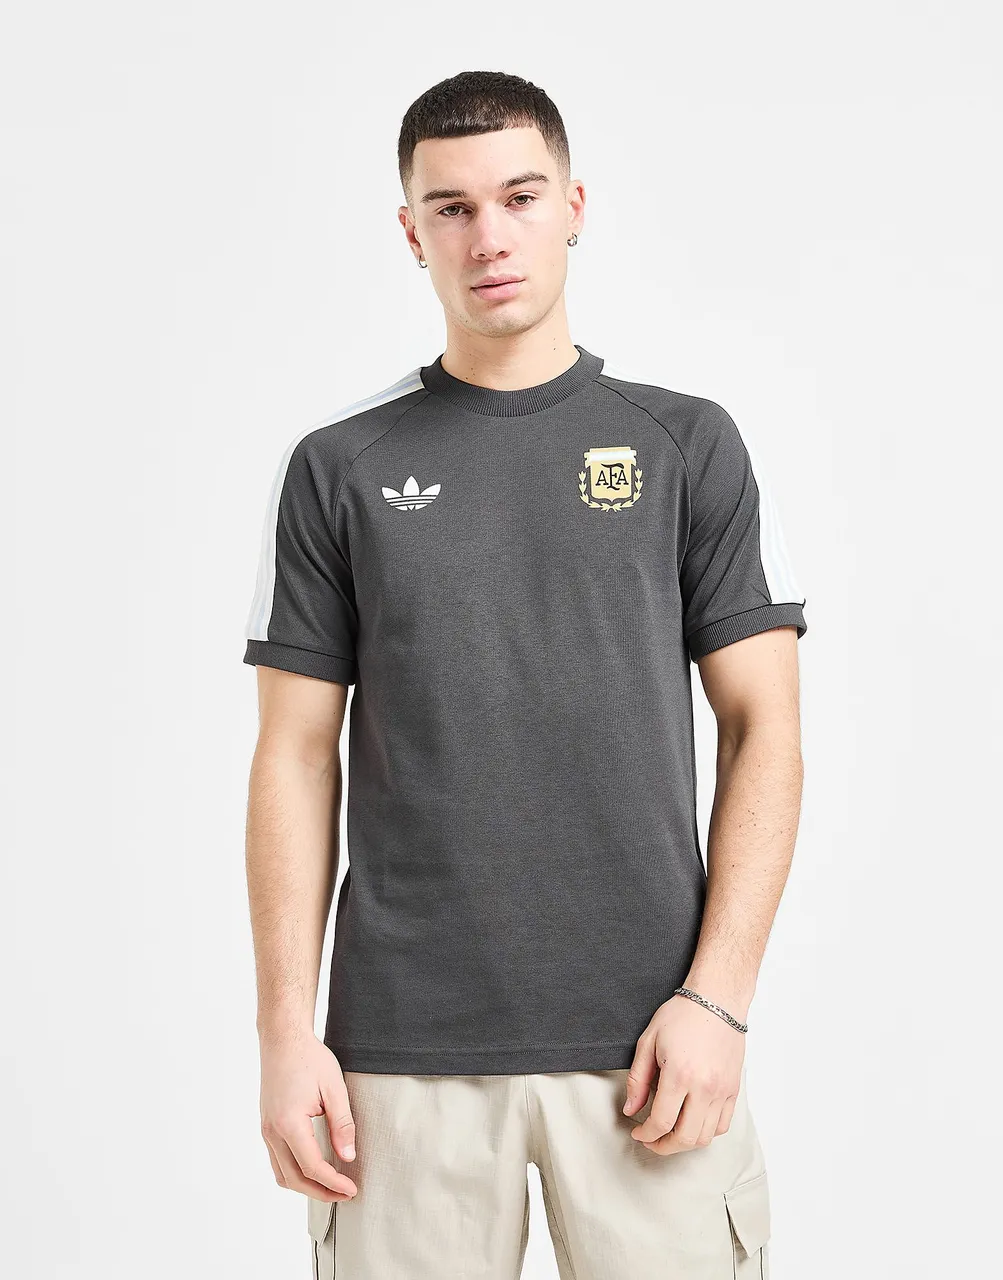 adidas Originals Argentina 3-Stripes T-Shirt, Utility Black